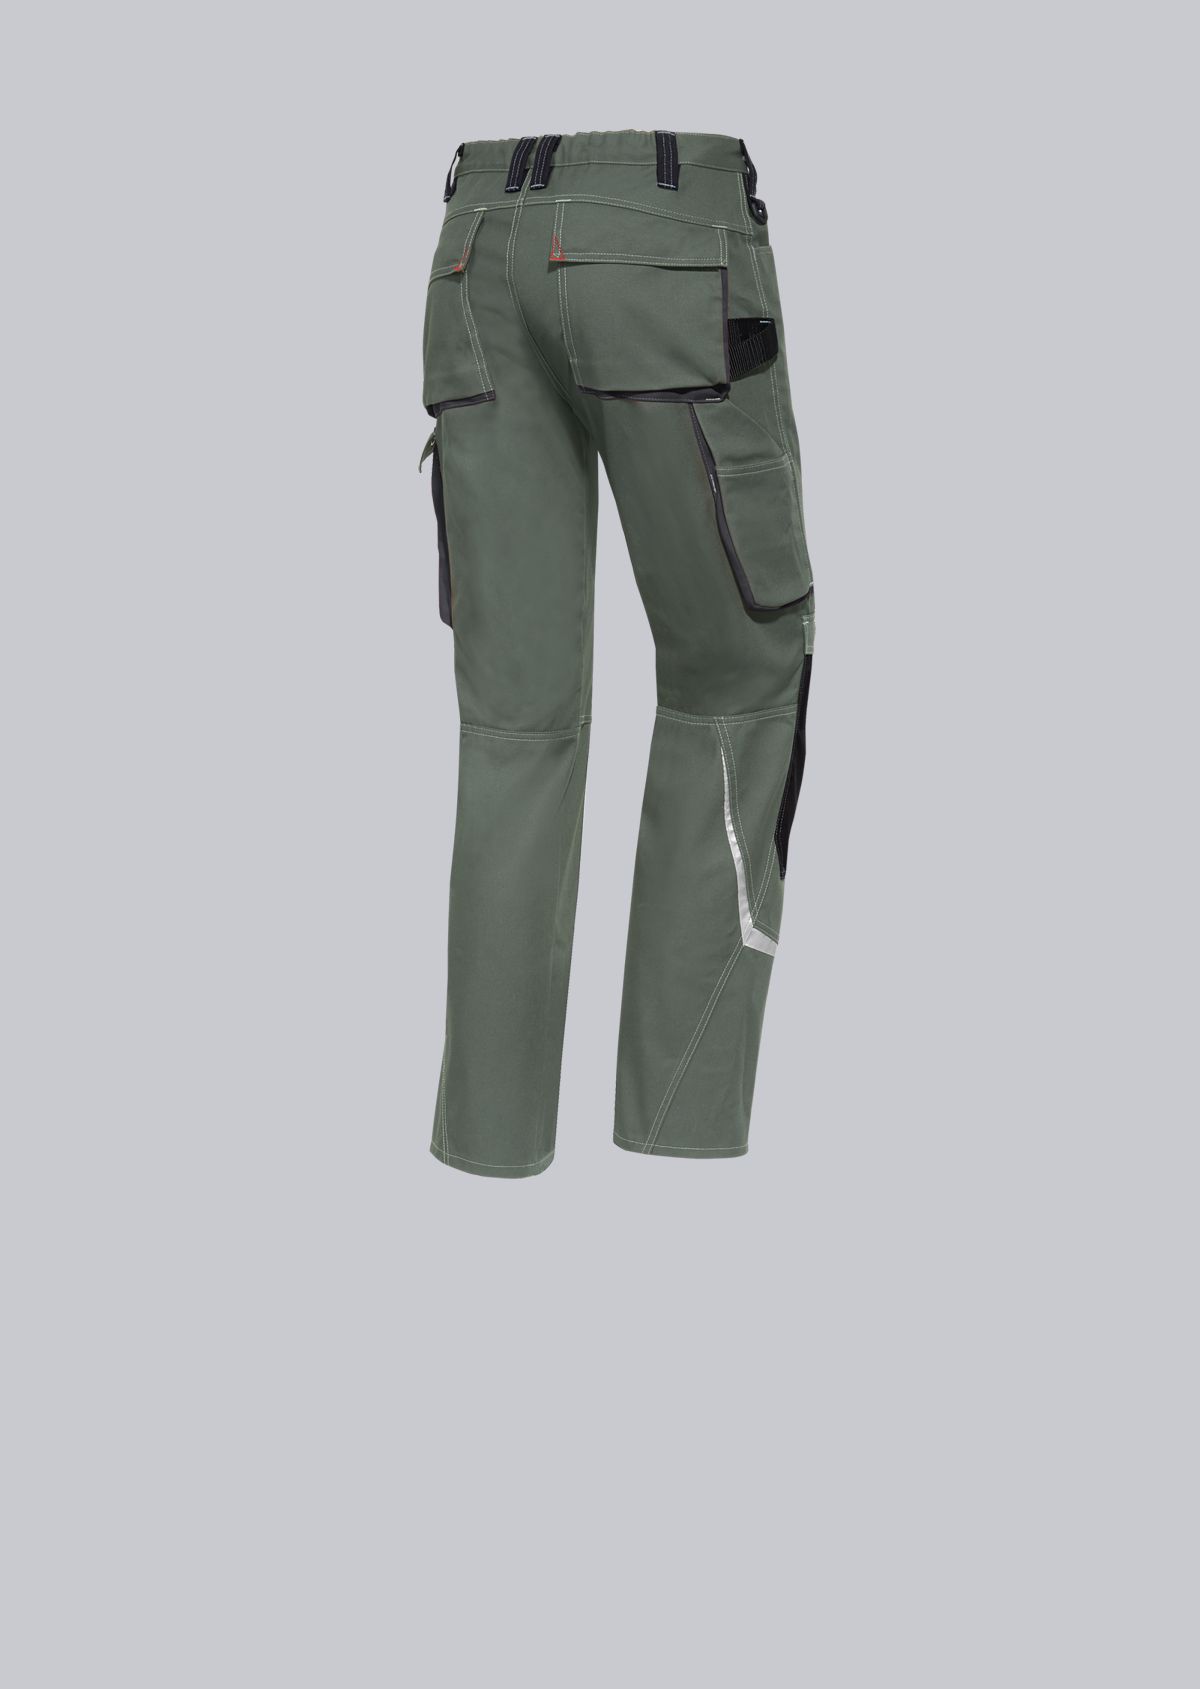 BP® Pantalon de travail confort avec réflecteurs et genouillères